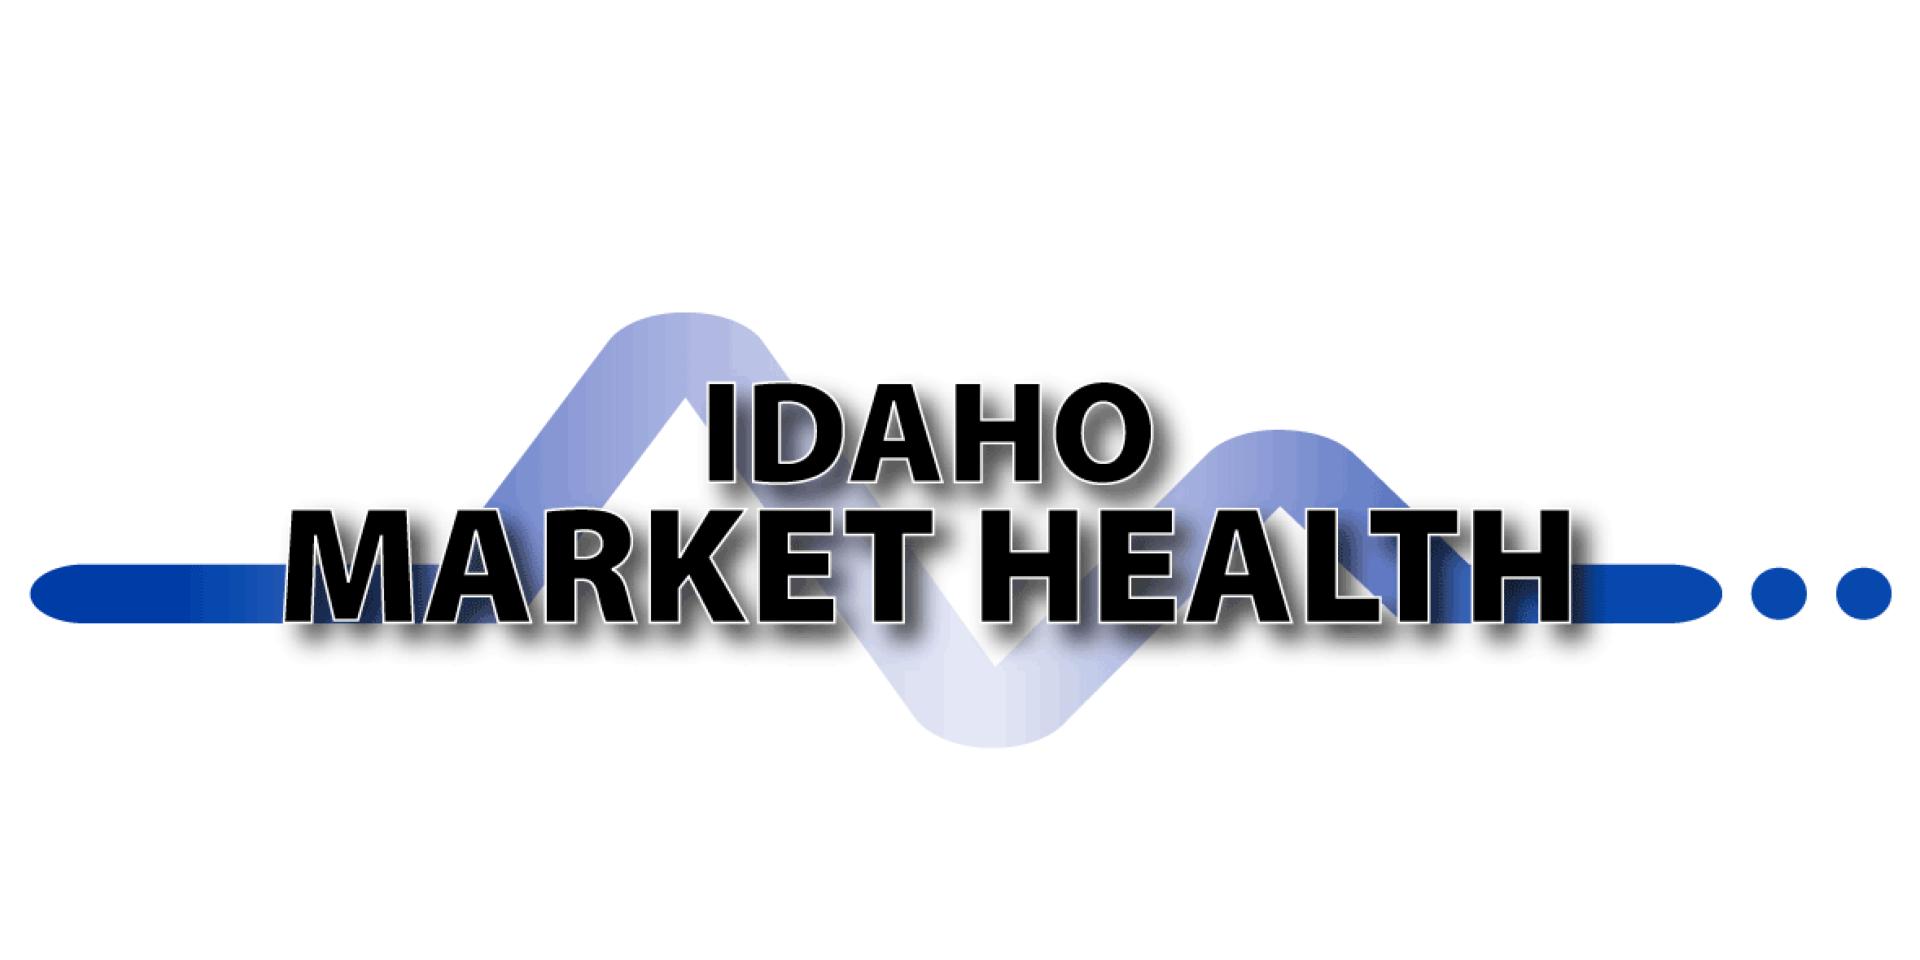 Idaho CRE Market Health Retail February 2022